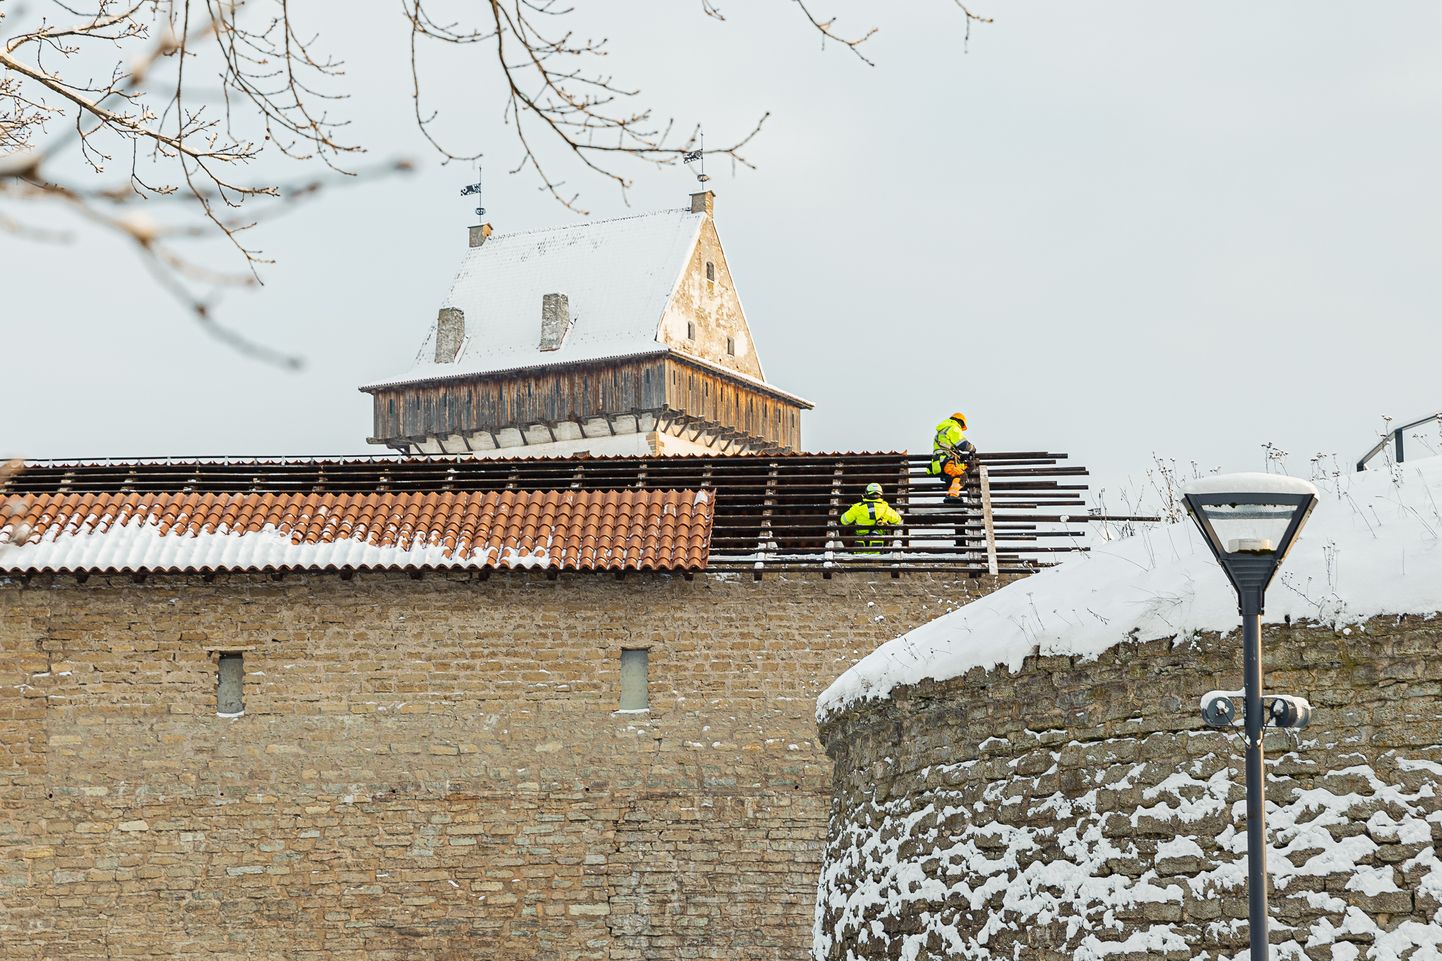 Над галереей западной стены Нарвского замка сейчас перебирают крышу, поскольку старая ее конструкция пребывала в плачевном состоянии.